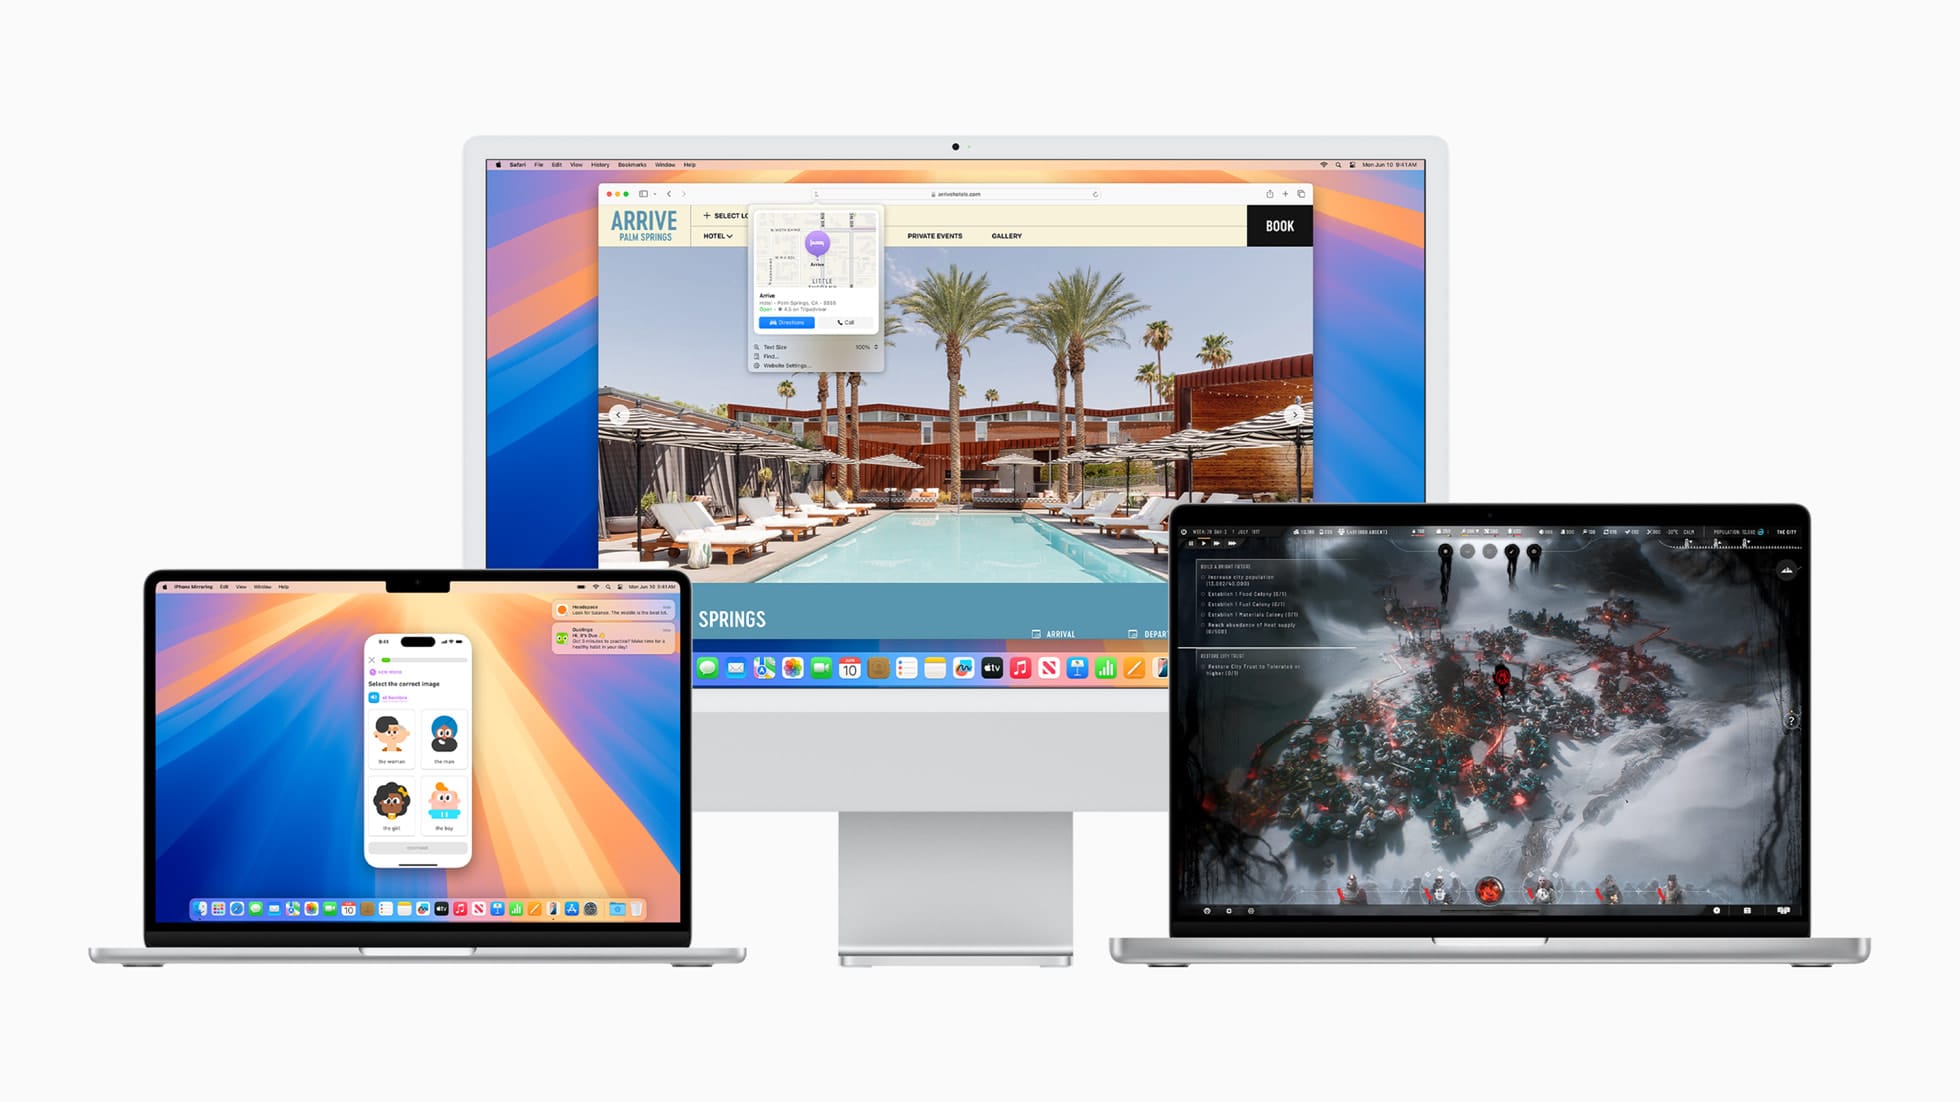 OS X e macOS - Todas as versões lançadas até hoje